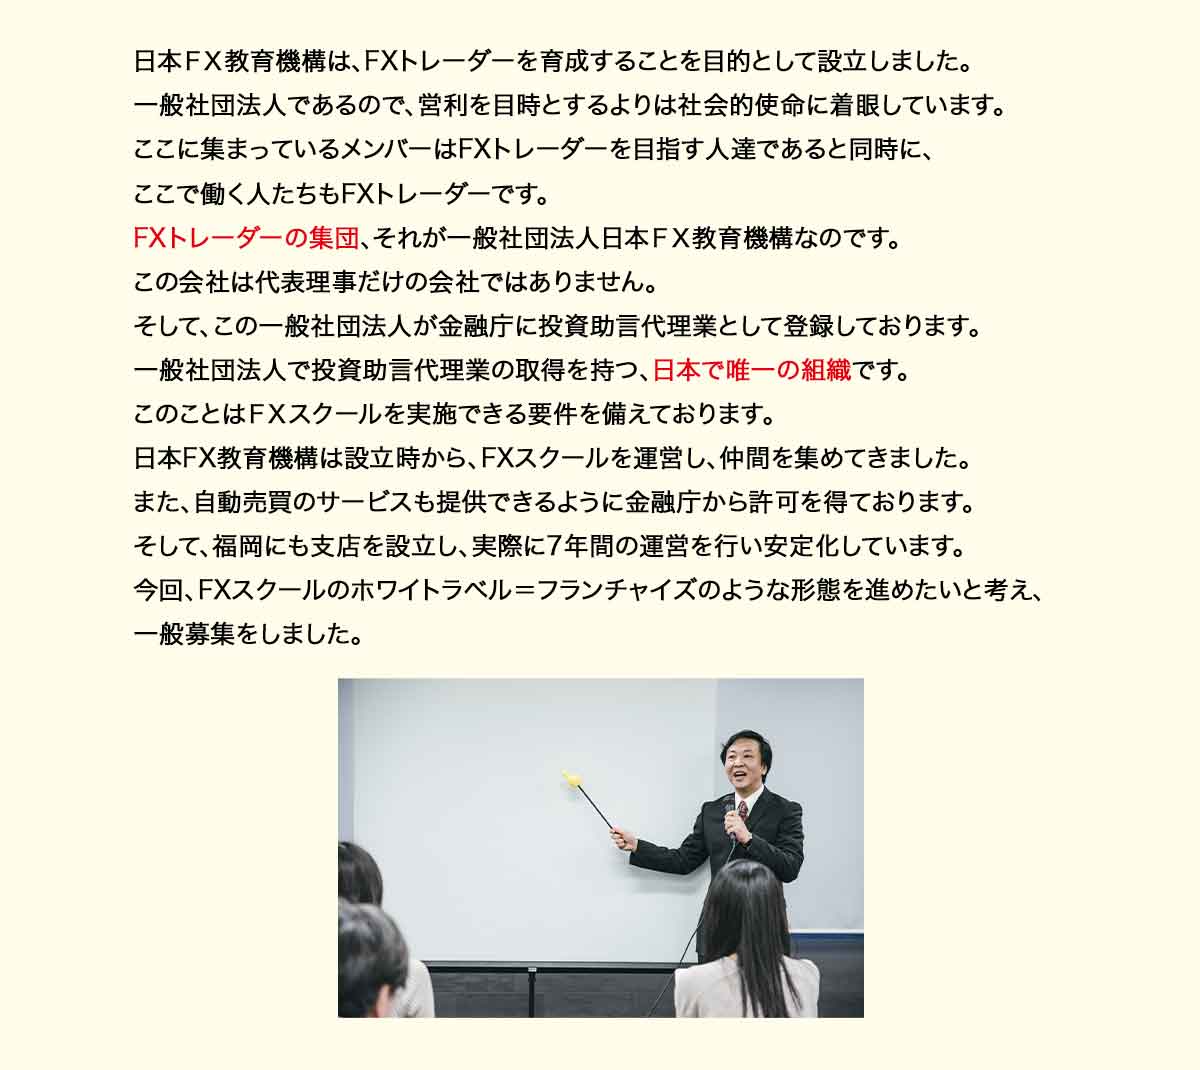 日本ＦＸ教育機構は、FXトレーダーを育成することを目的として設立しました。 一般社団法人であるので、営利を目時とするよりは社会的使命に着眼しています